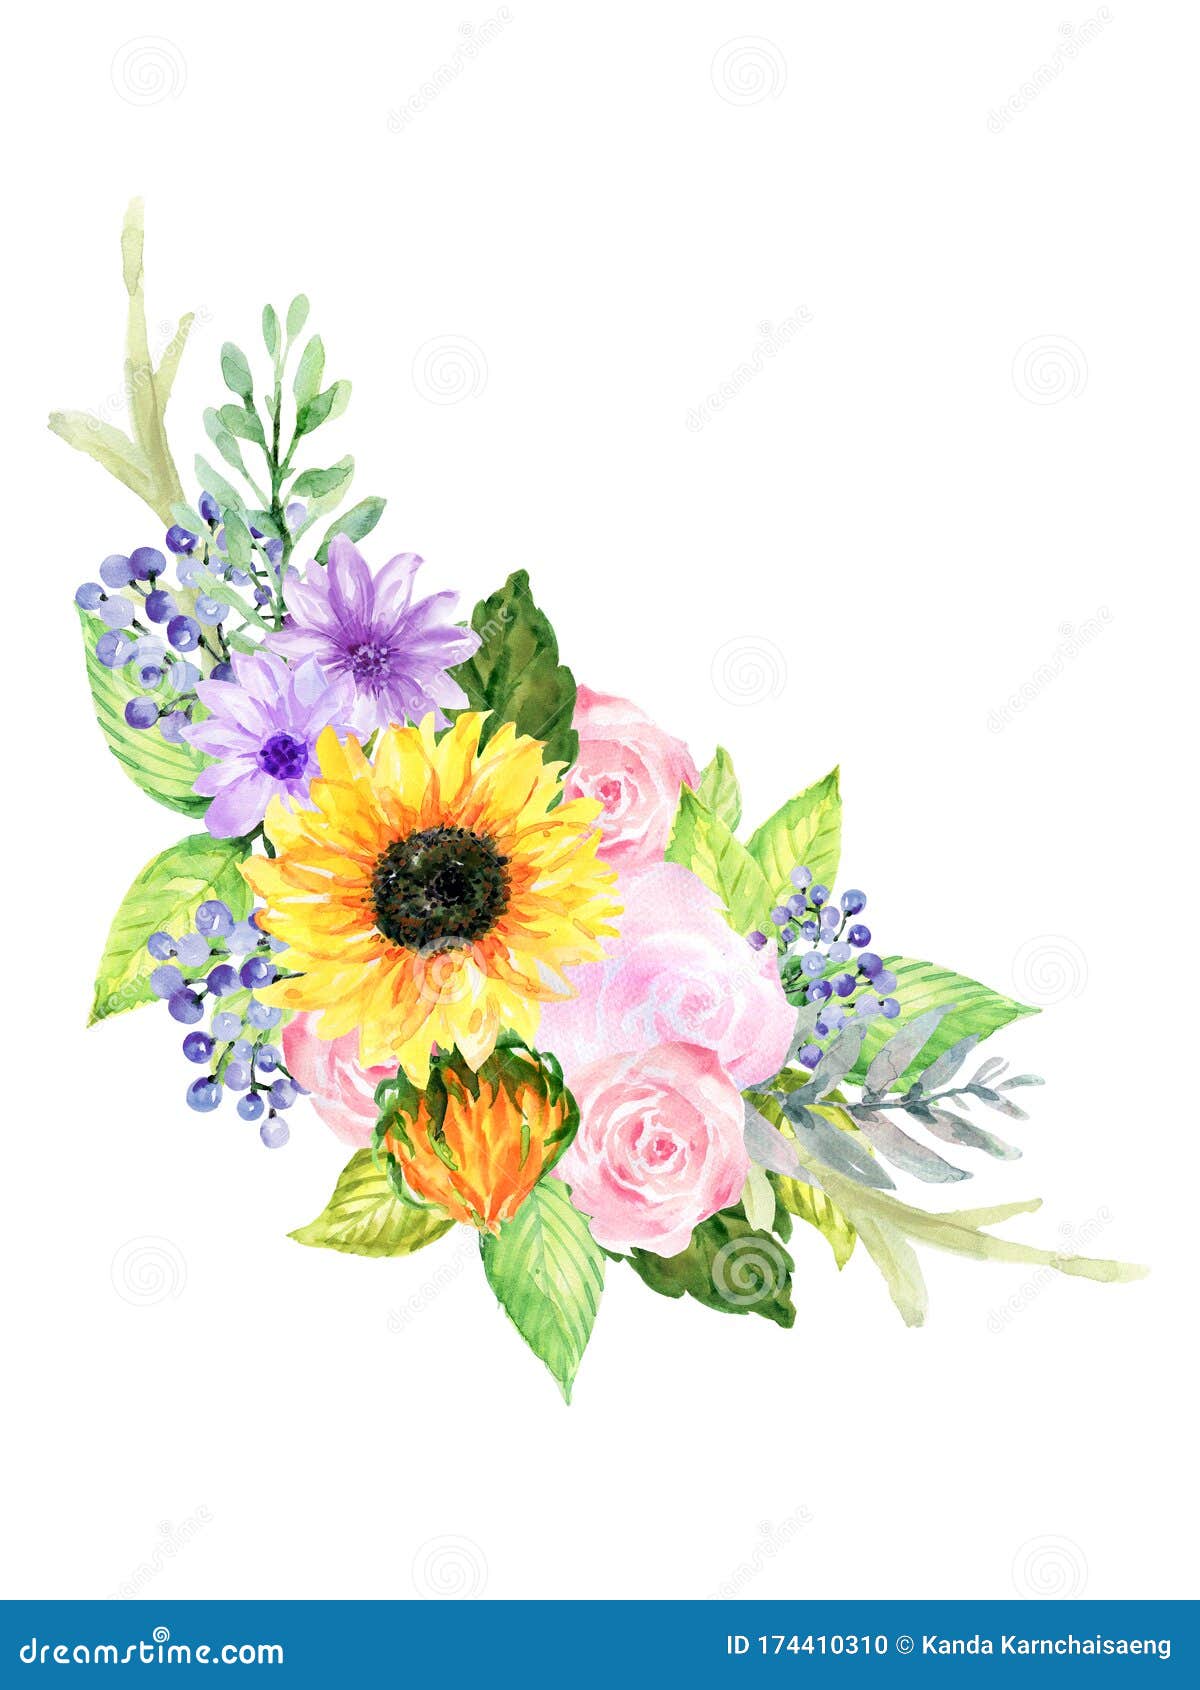 水彩美丽的古朴春夏花玫瑰葵花束手绘库存例证 插画包括有庭院 构成 图画 查出 方式 花瓣